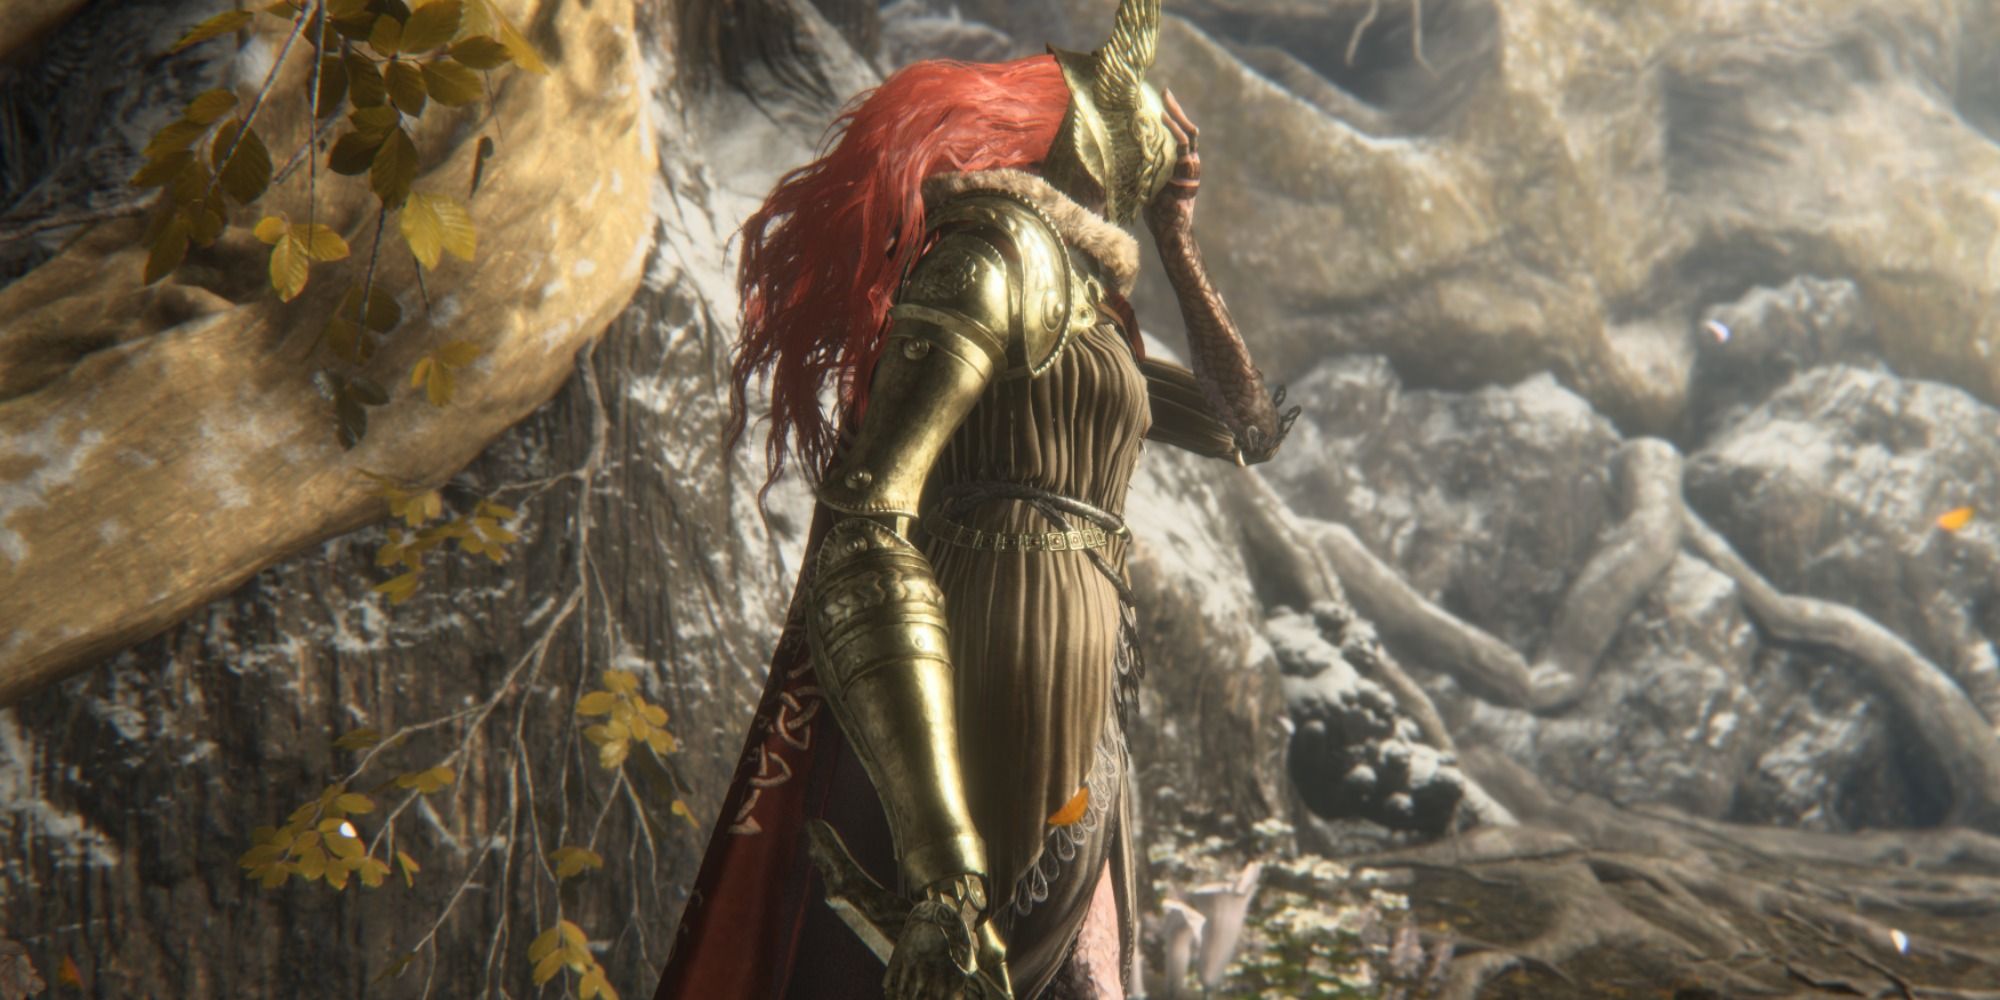 Malenia, Blade of Miquella, putter her helmet on in Elden Ring